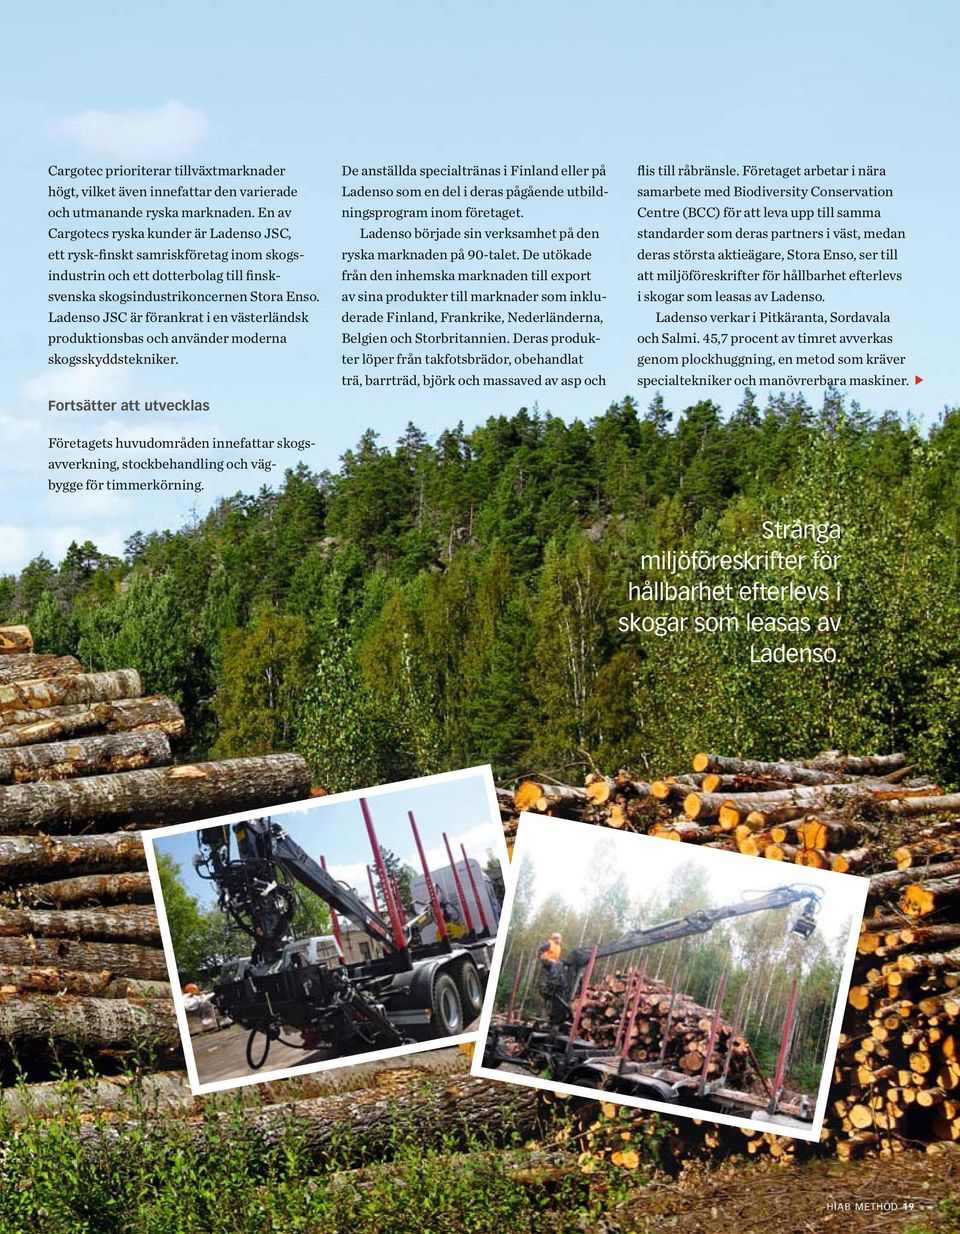 Ladenso JSC är förankrat i en västerländsk produktionsbas och använder moderna skogsskyddstekniker.